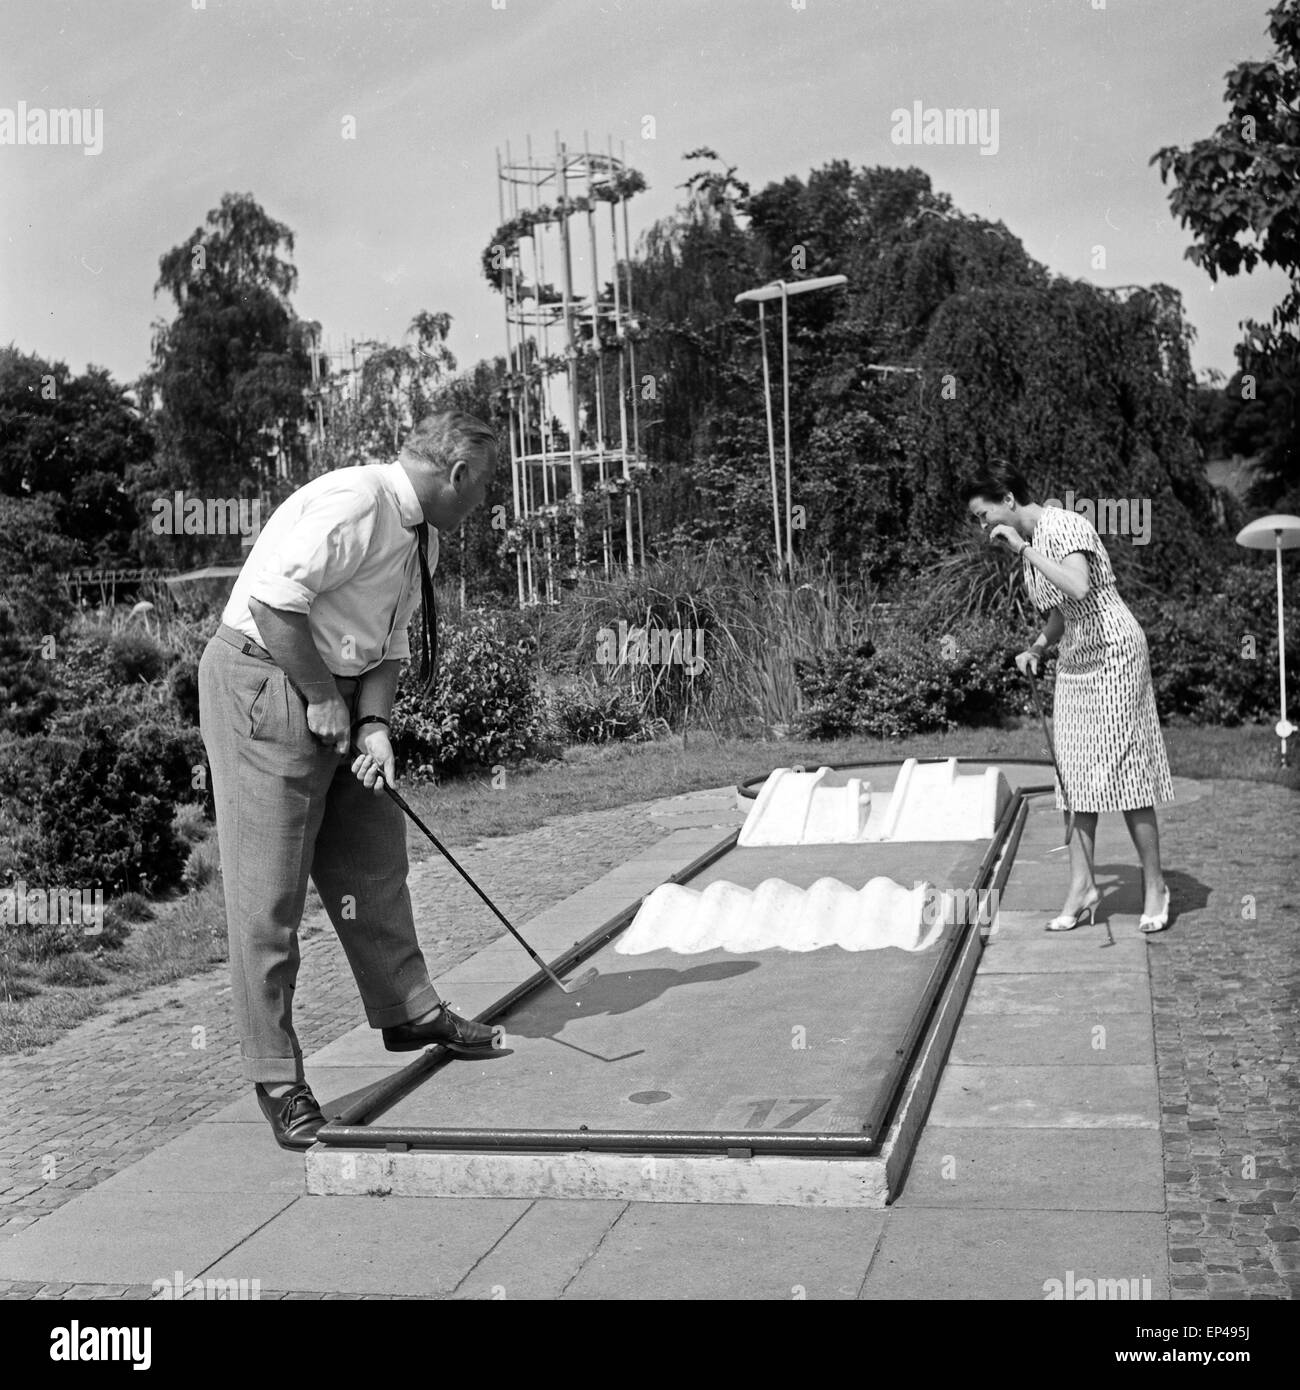 Programmsprecherin Irene Koss beim Minigolf im Park Planten un Blomen in Hamburg, Deutschland 1950er Jahre. German televisio Stock Photo